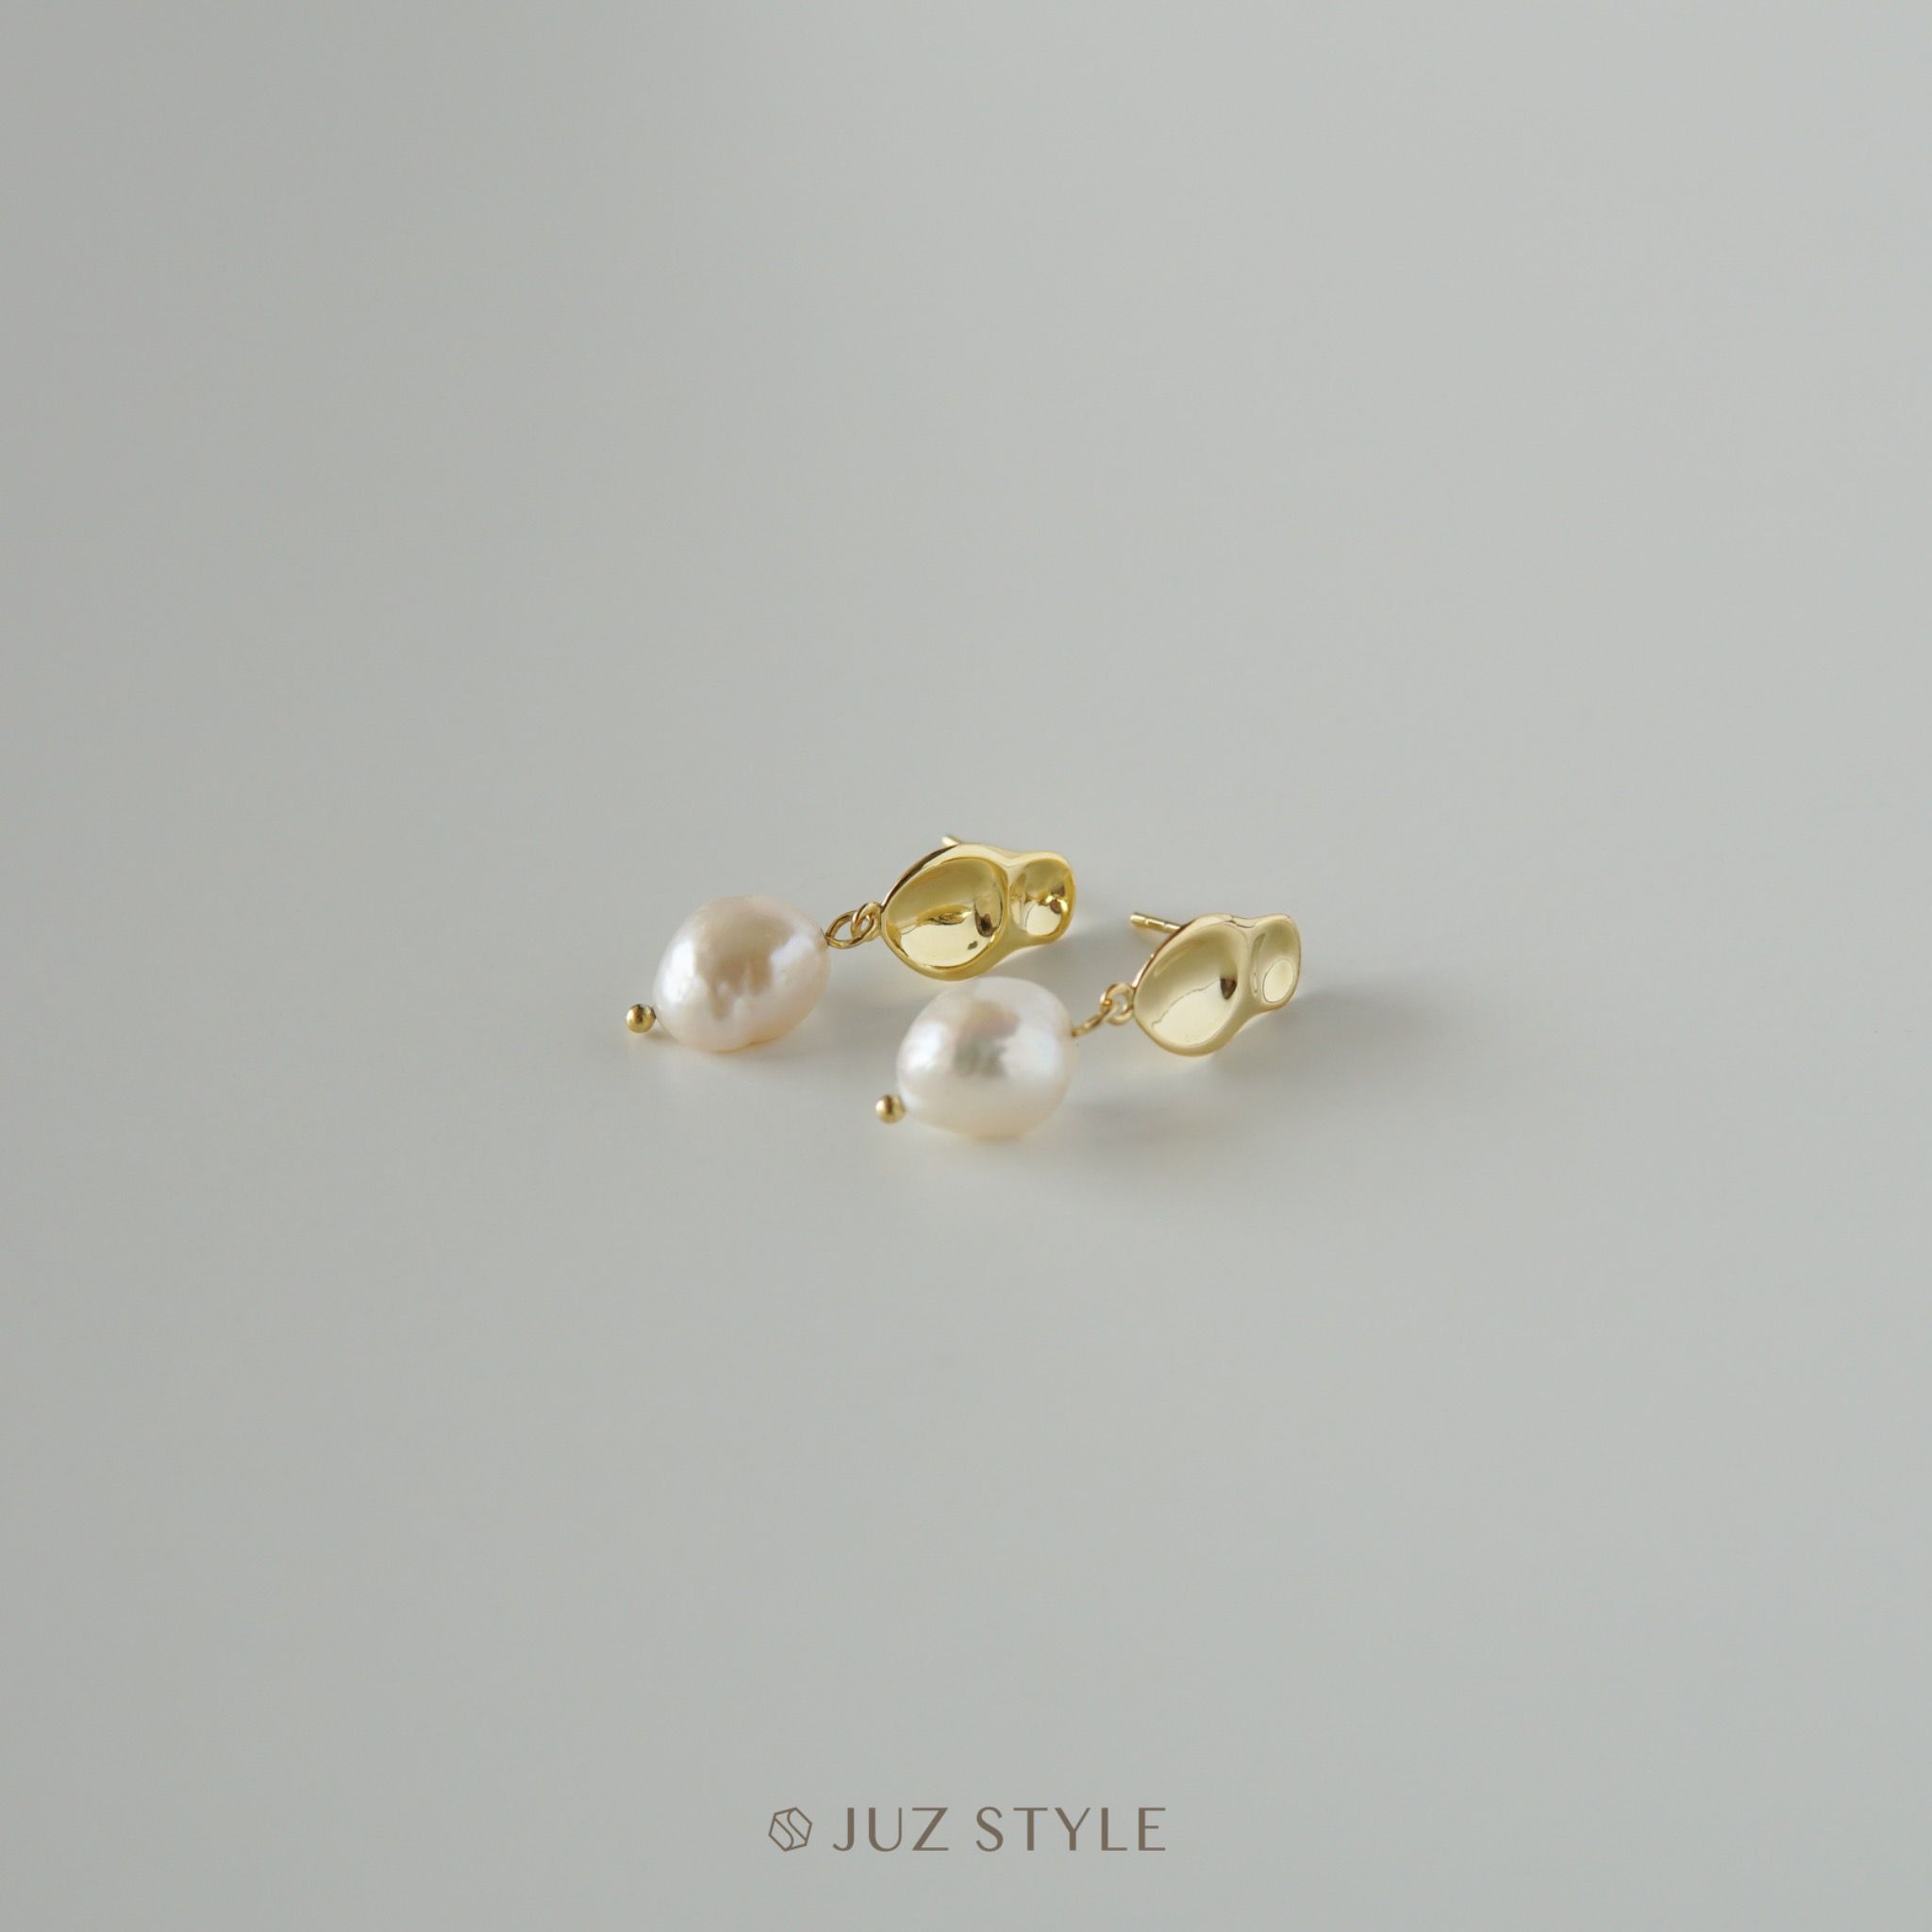  Bông tai bạc Golden pearl 